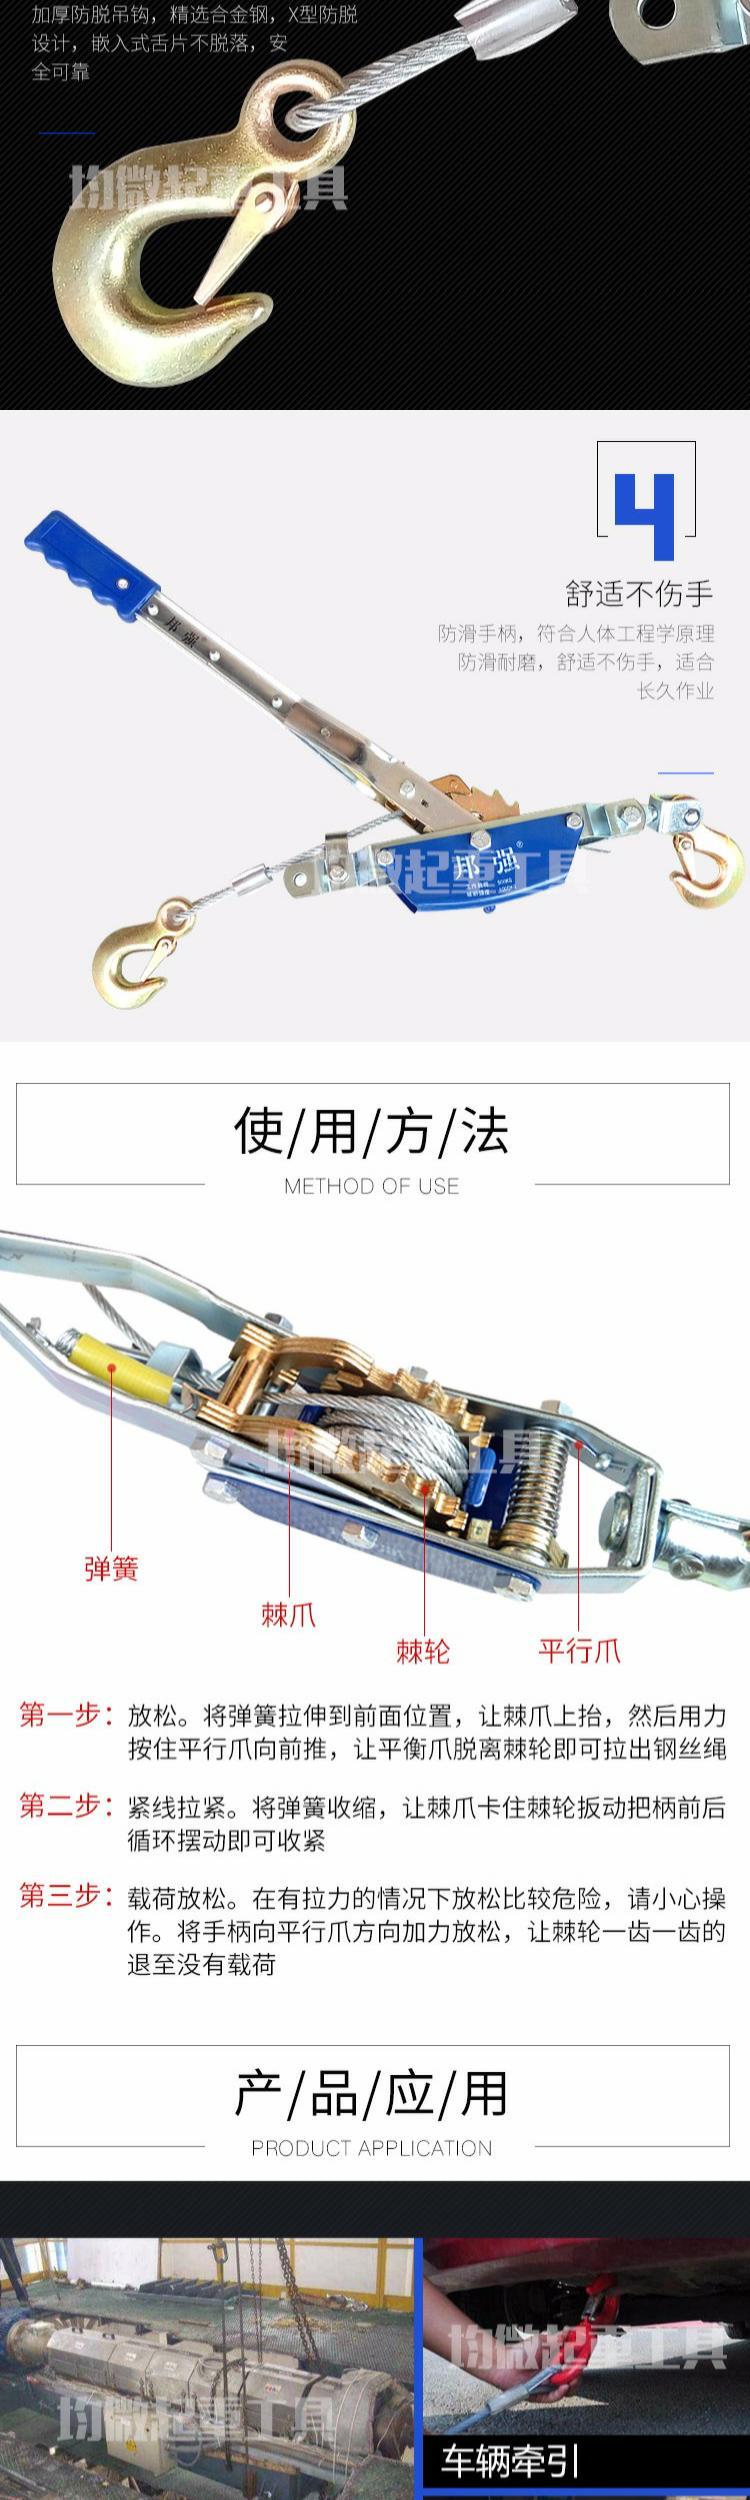 . Bangqiang Thắt chặt hơn Xoắn dây móc đôi Dây bằng tay Kéo chặt hơn Dụng cụ nâng điện đa năng - Dụng cụ thủy lực / nâng